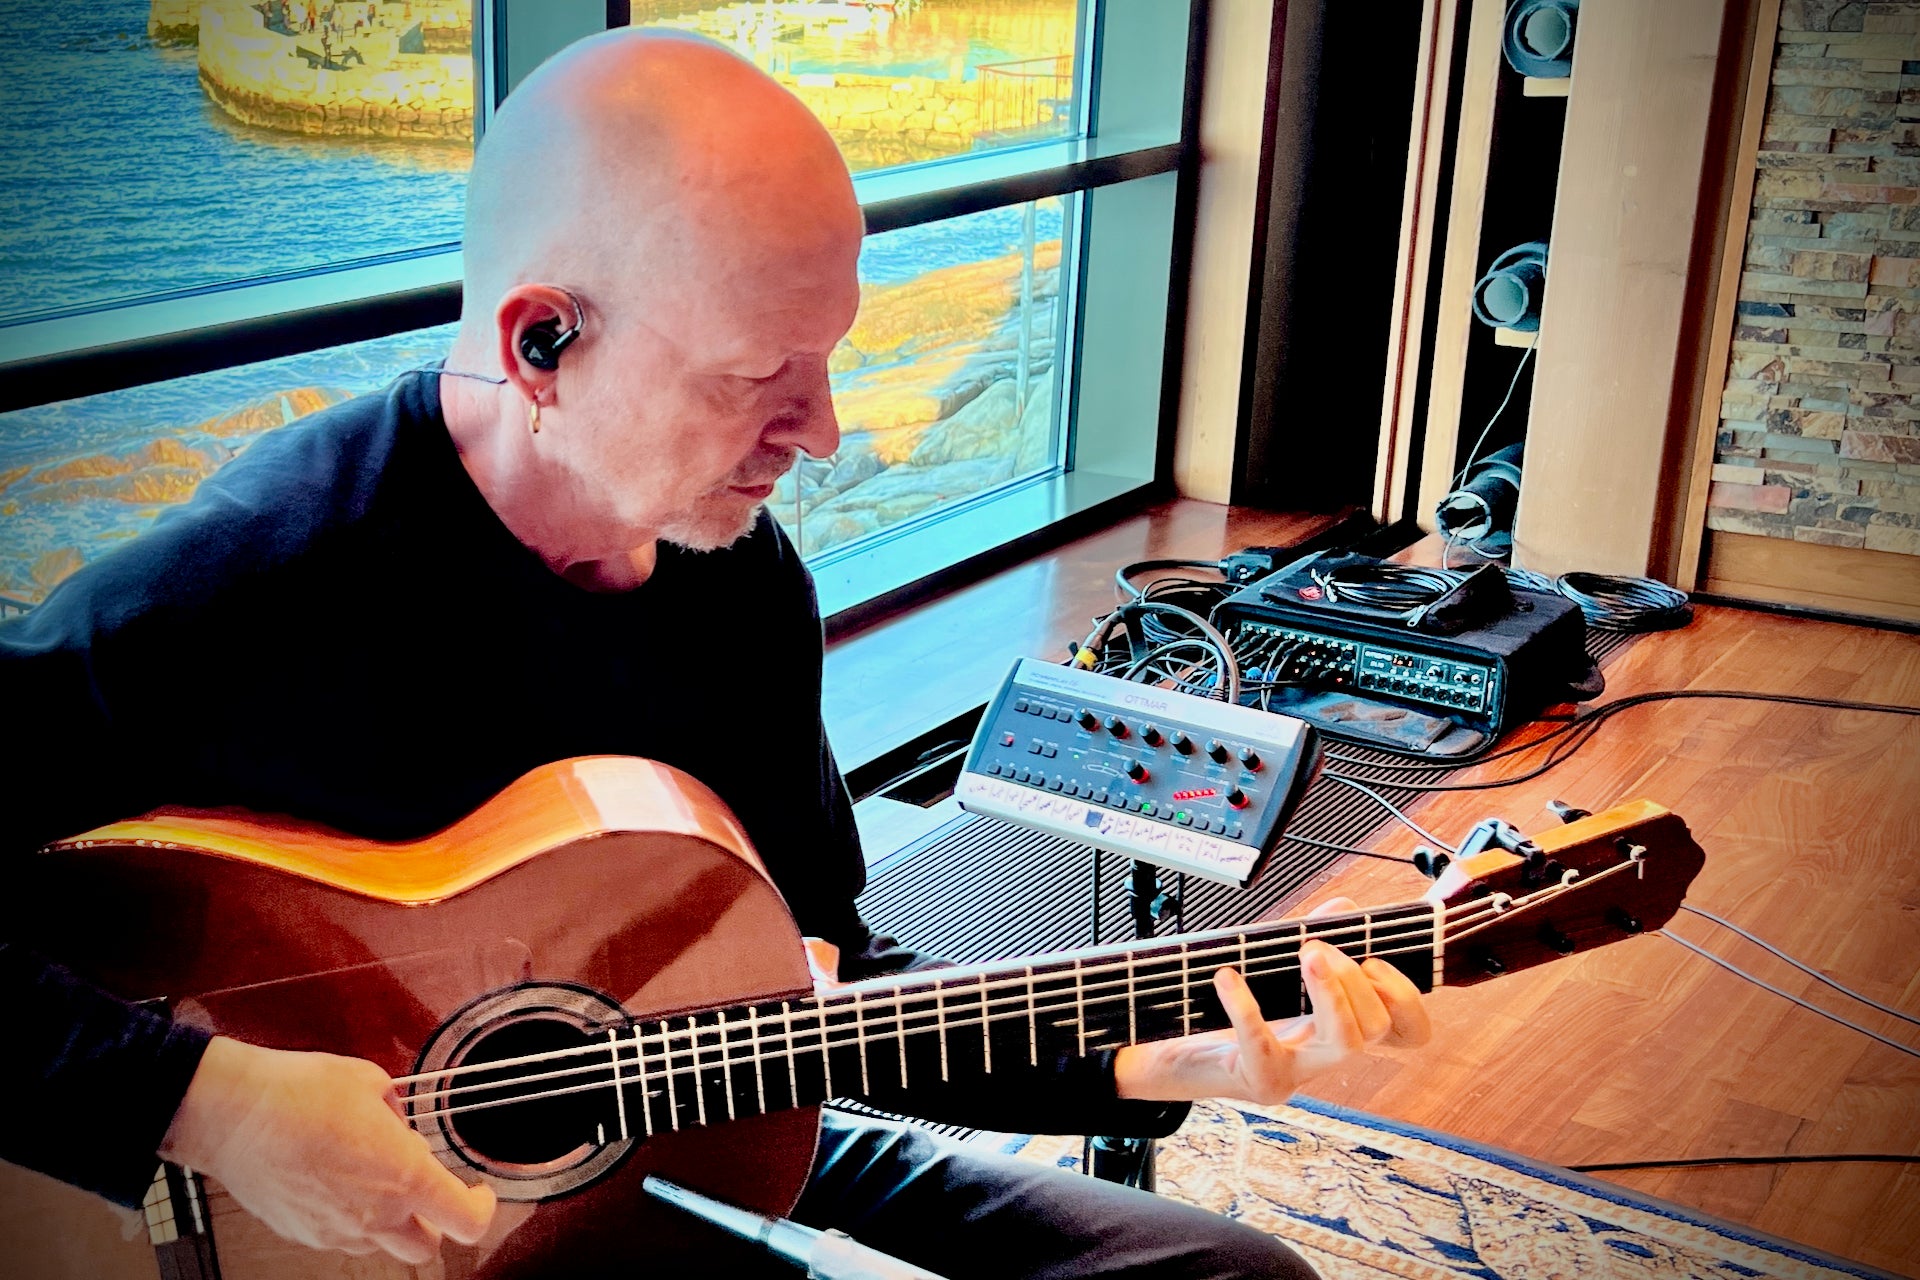 Ottmar Liebert in the studio with his Audeze Euclid headphones